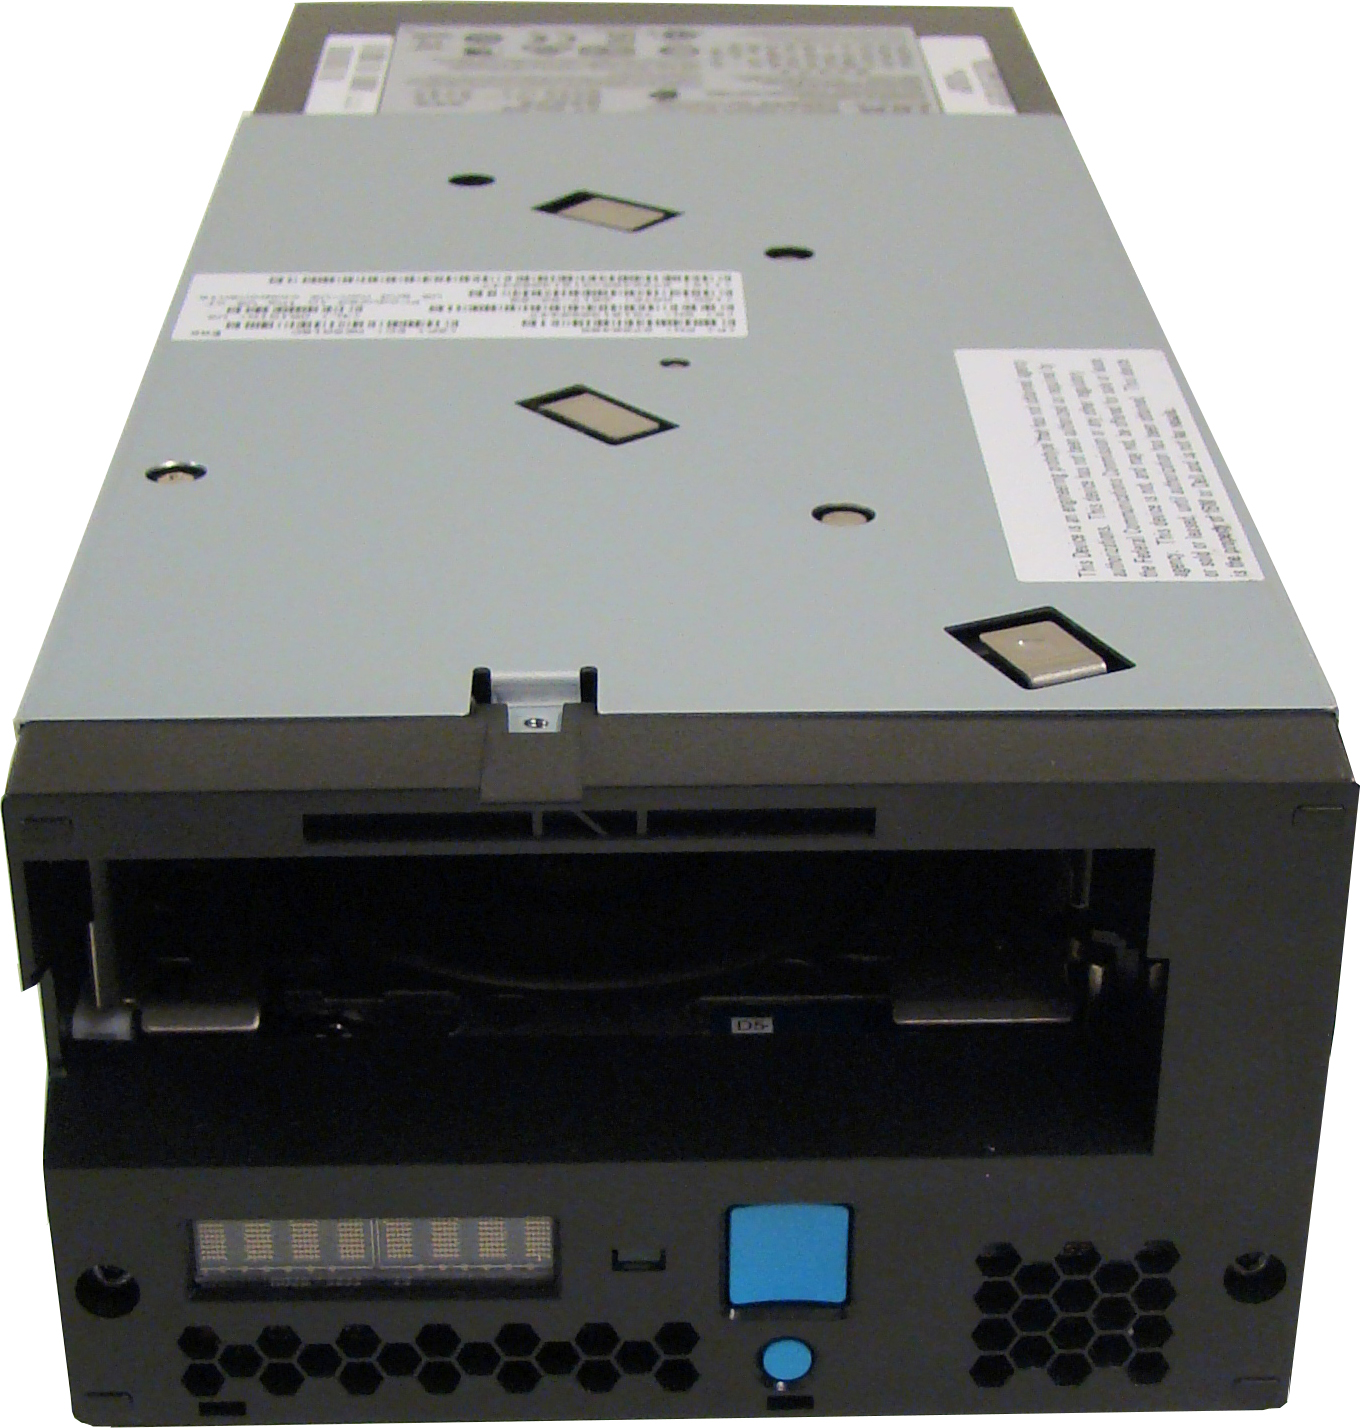 IBM выпустила накопитель на магнитных лентах TS1155